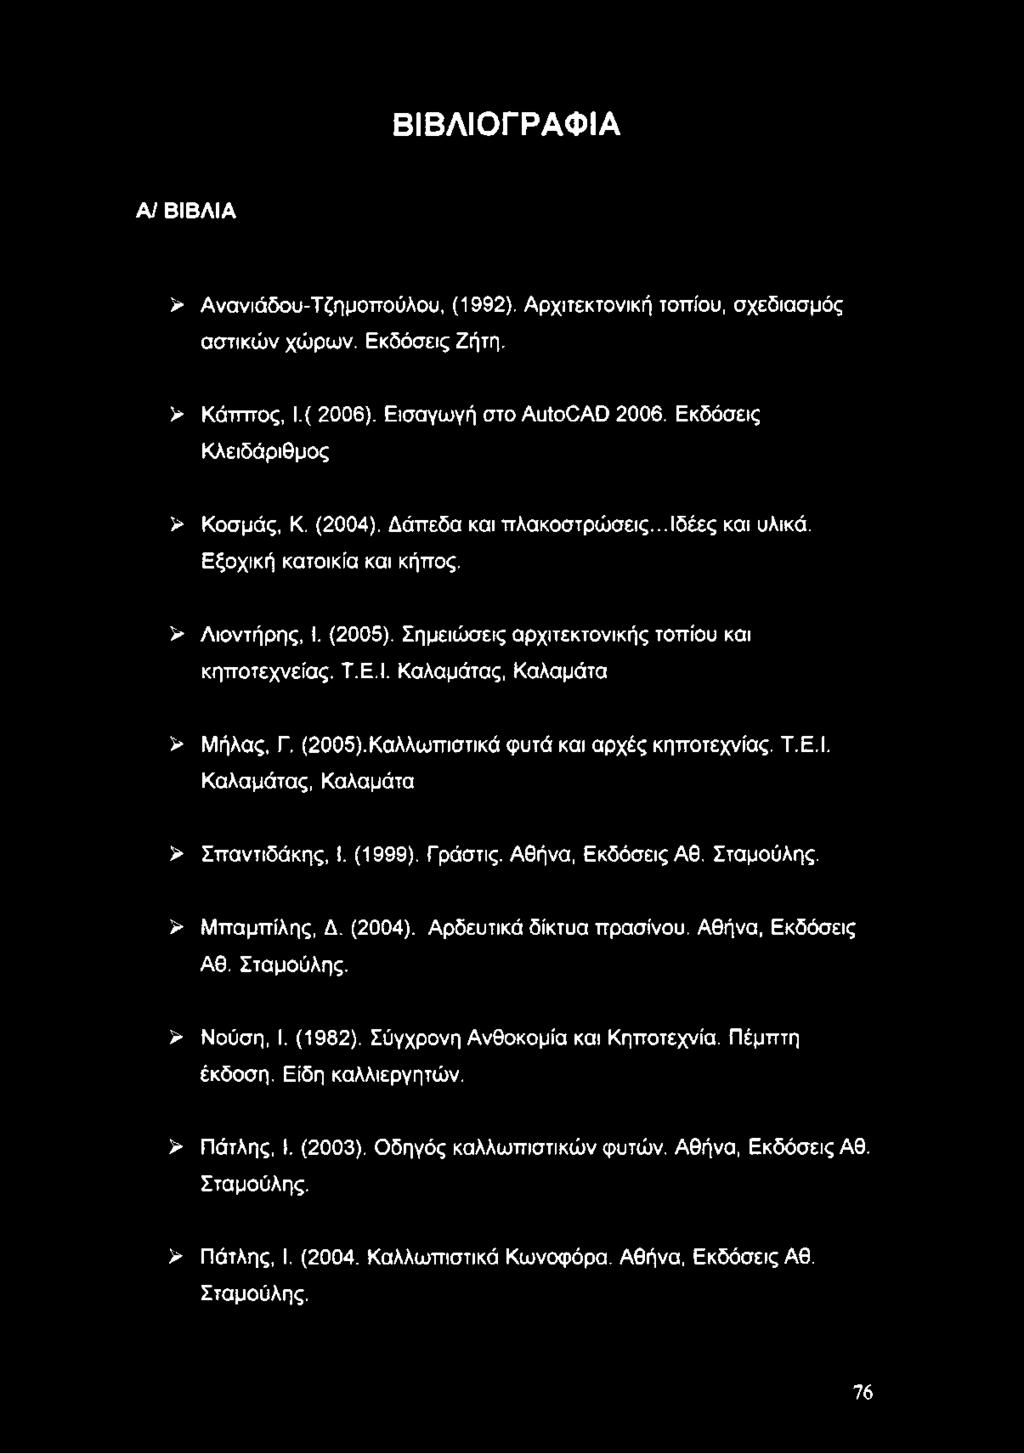 Καλαμάτας, Καλαμάτα > Μήλας, Γ. (2005).Καλλωπιστικά φυτά και αρχές κηποτεχνίας. Τ.Ε.Ι. Καλαμάτας, Καλαμάτα > Σπαντιδάκης, I. (1999). Γράστις. Αθήνα, Εκδόσεις Αθ. Σταμούλης. > Μπαμπίλης, Δ. (2004).